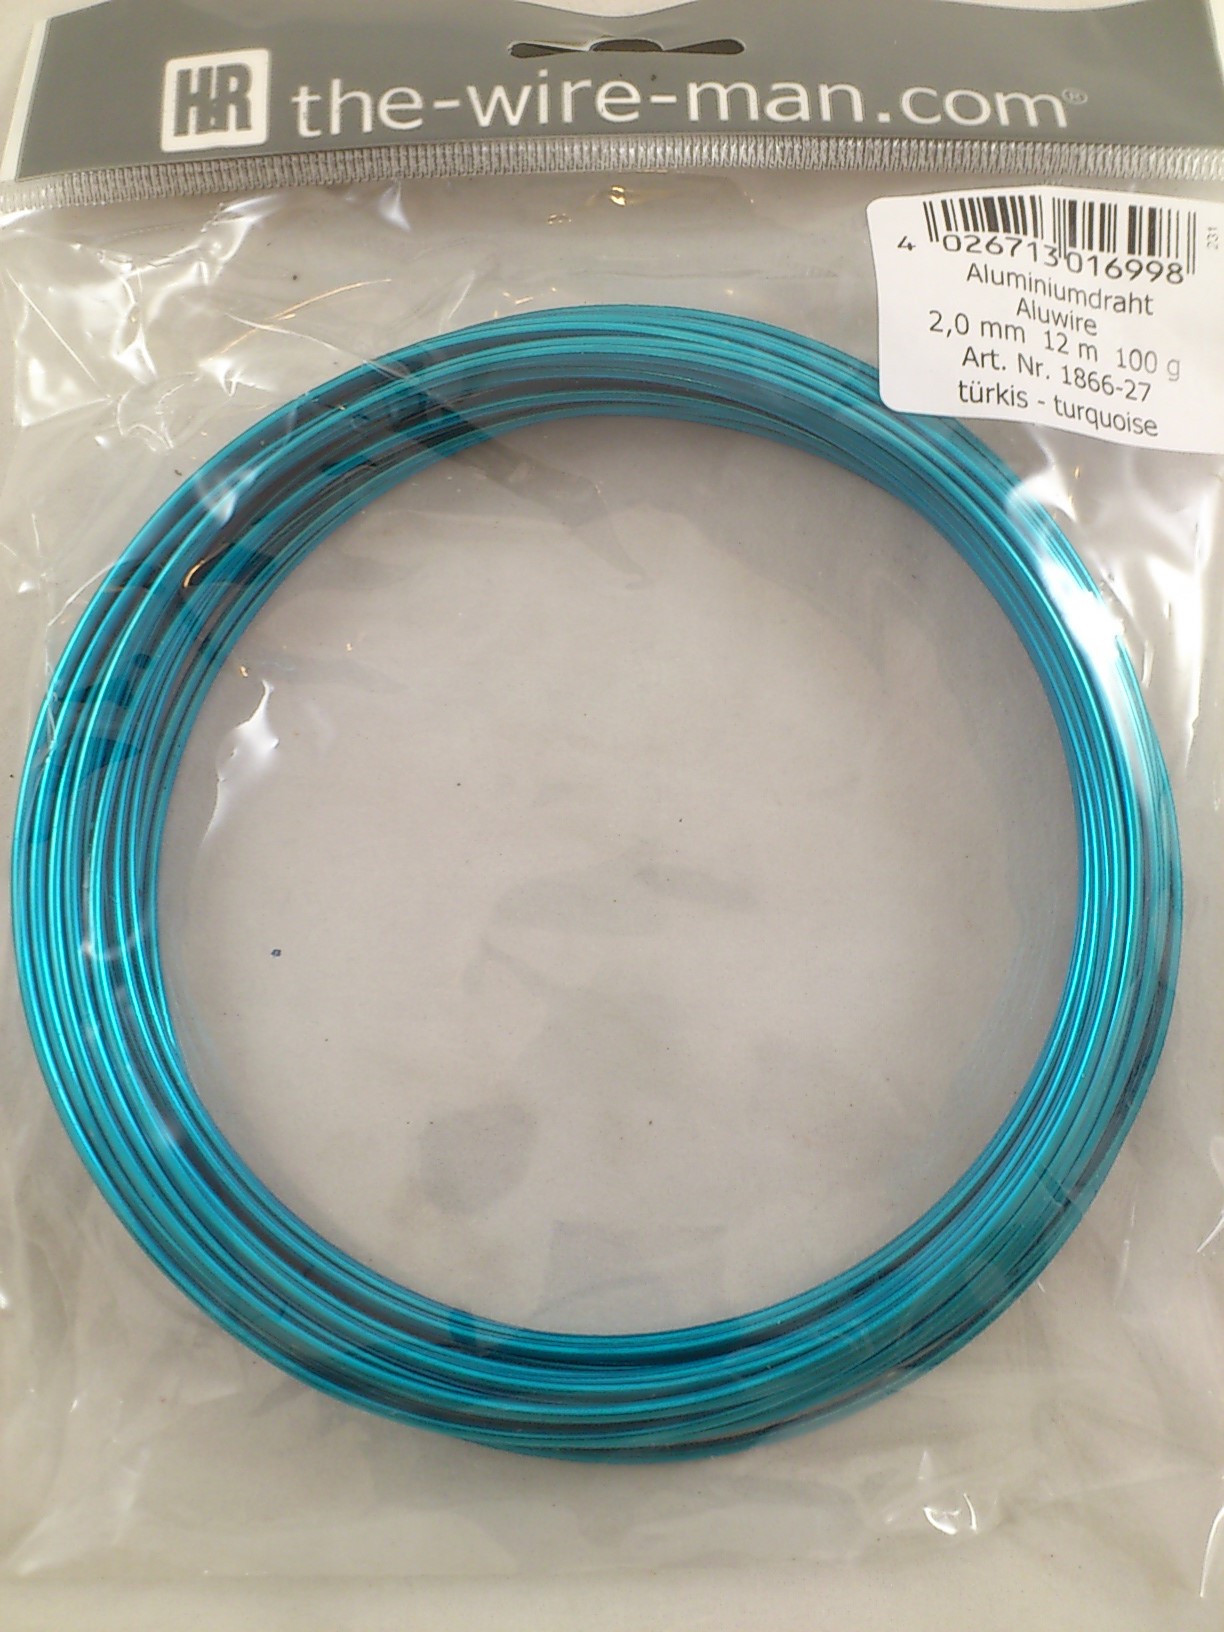 Aluminium wire turquoise 2mmx12m